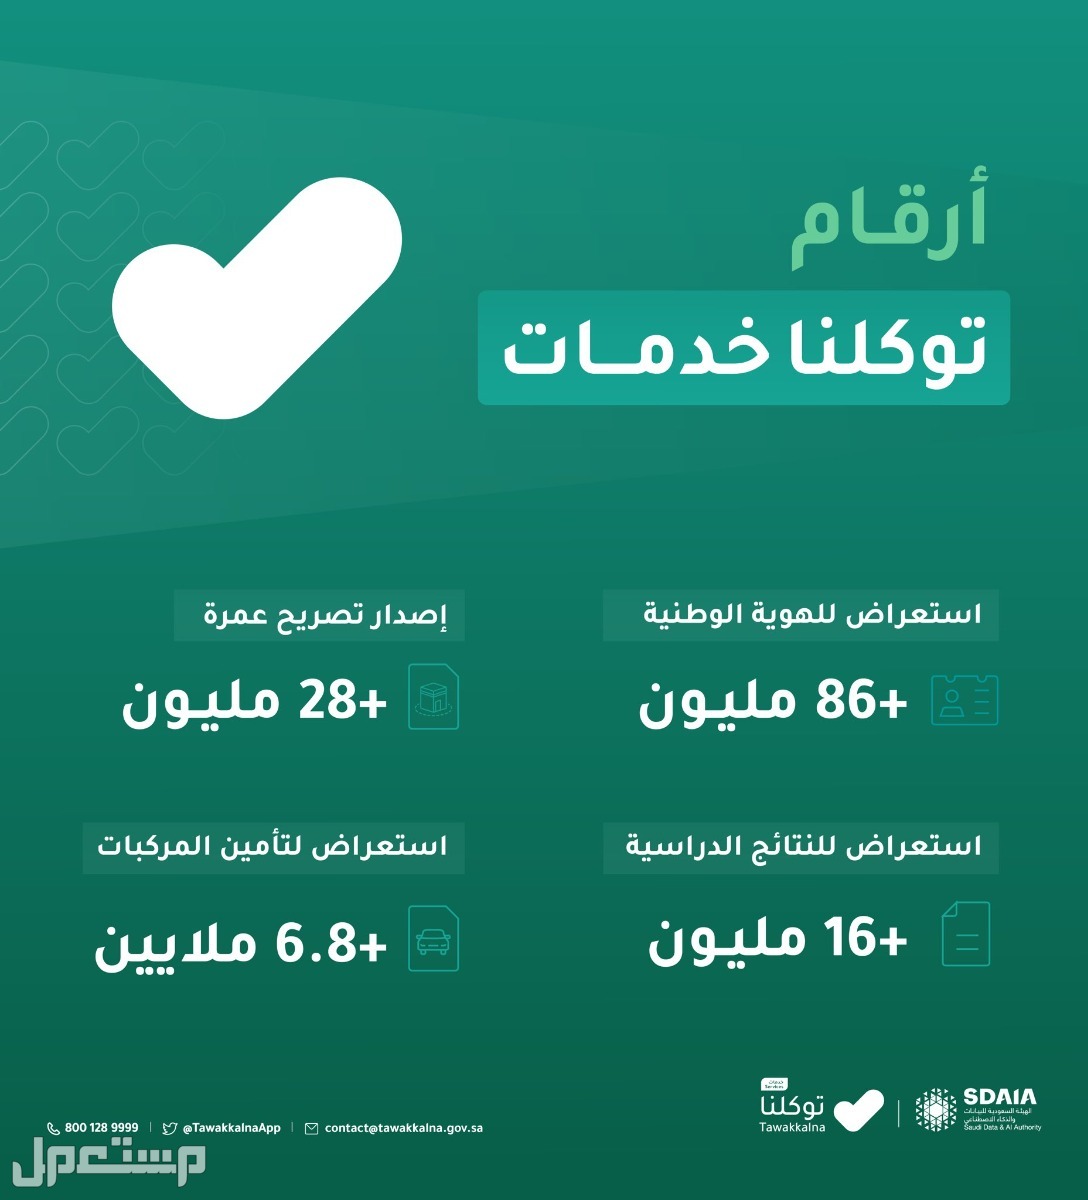 خطوات استعراض إعدادات الحساب في توكلنا خدمات في الكويت أرقام توكلنا